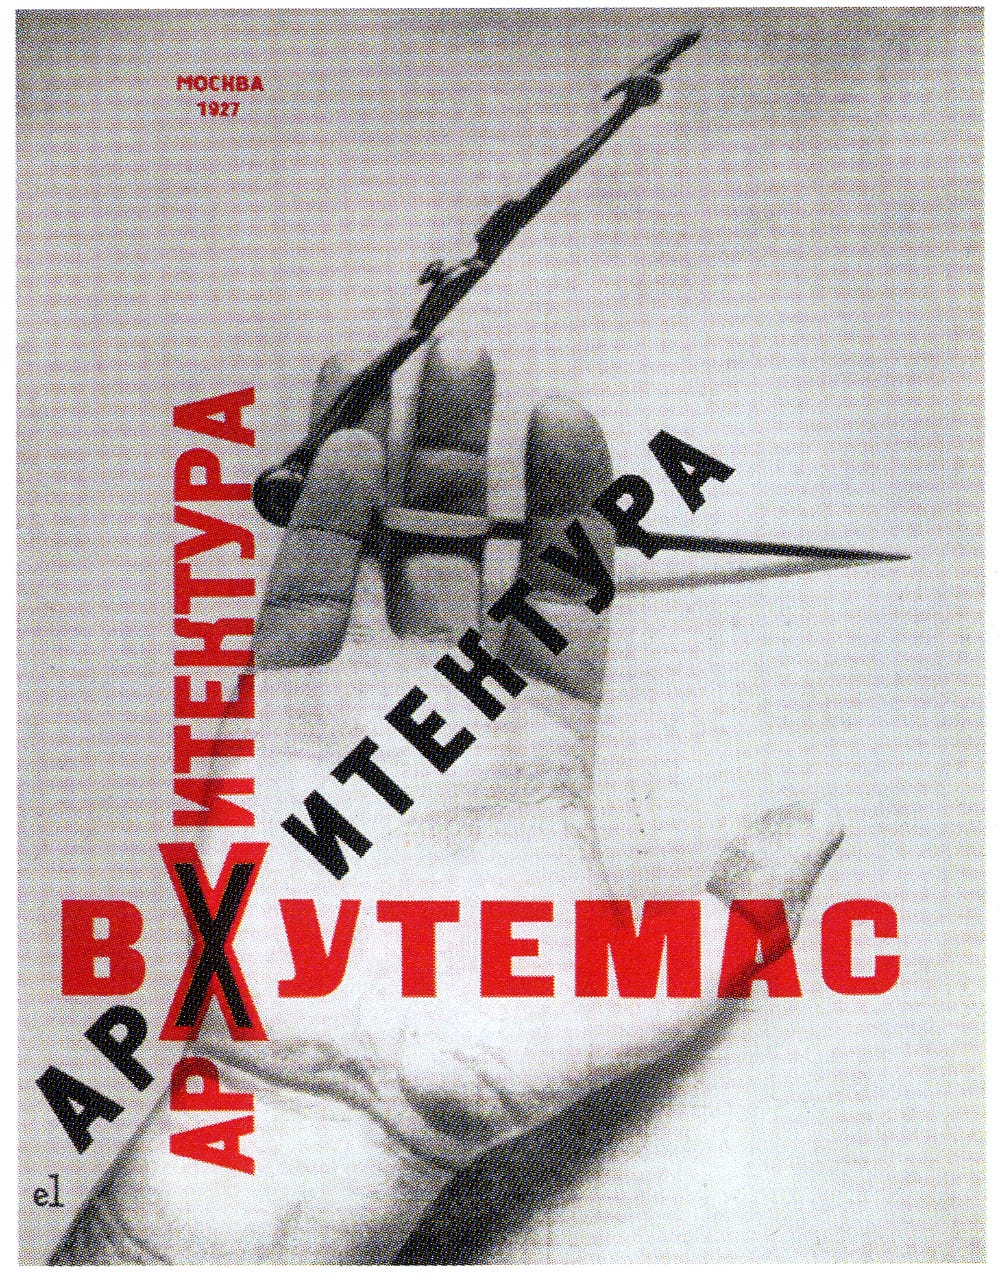 Capa do livro “Arquitetura na Vkhutemas”, de 1927, feita por El Lissitsky.